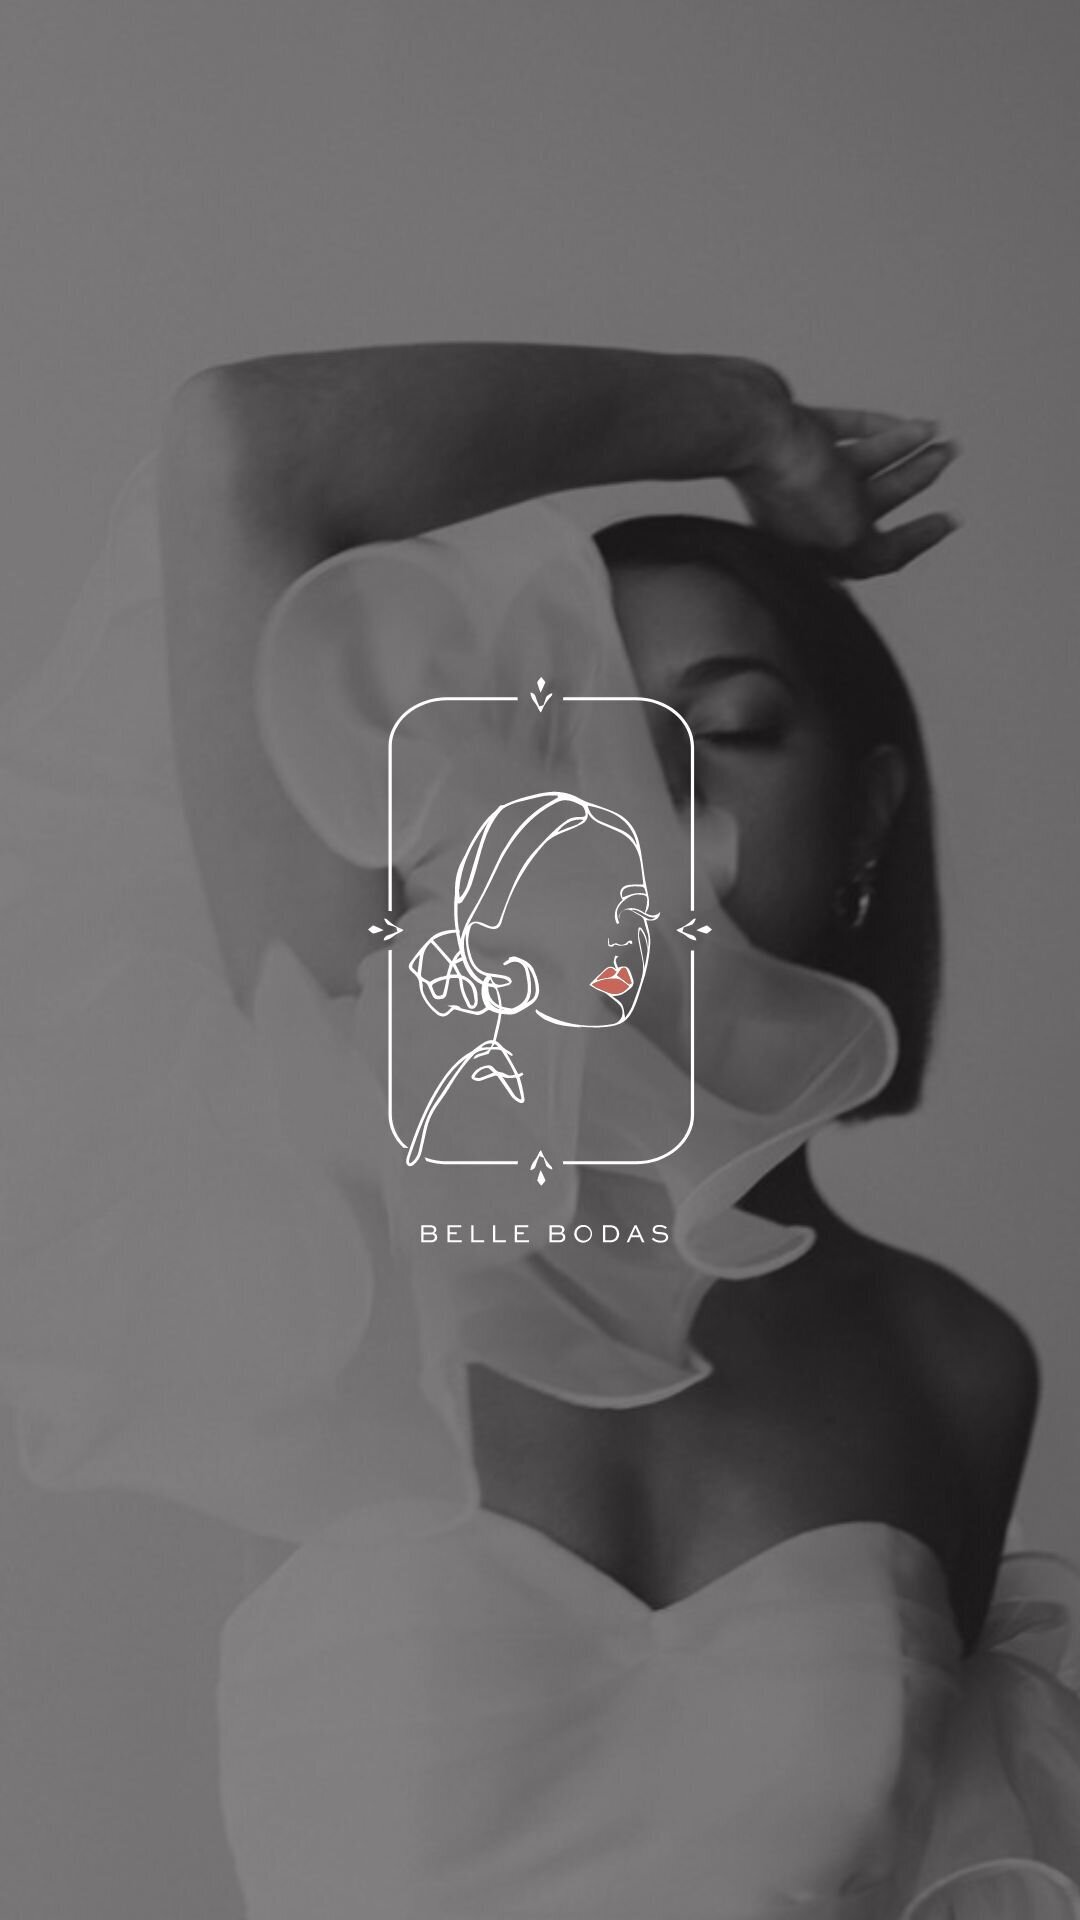 Foil & Ink branding & web design for Belle bodas events